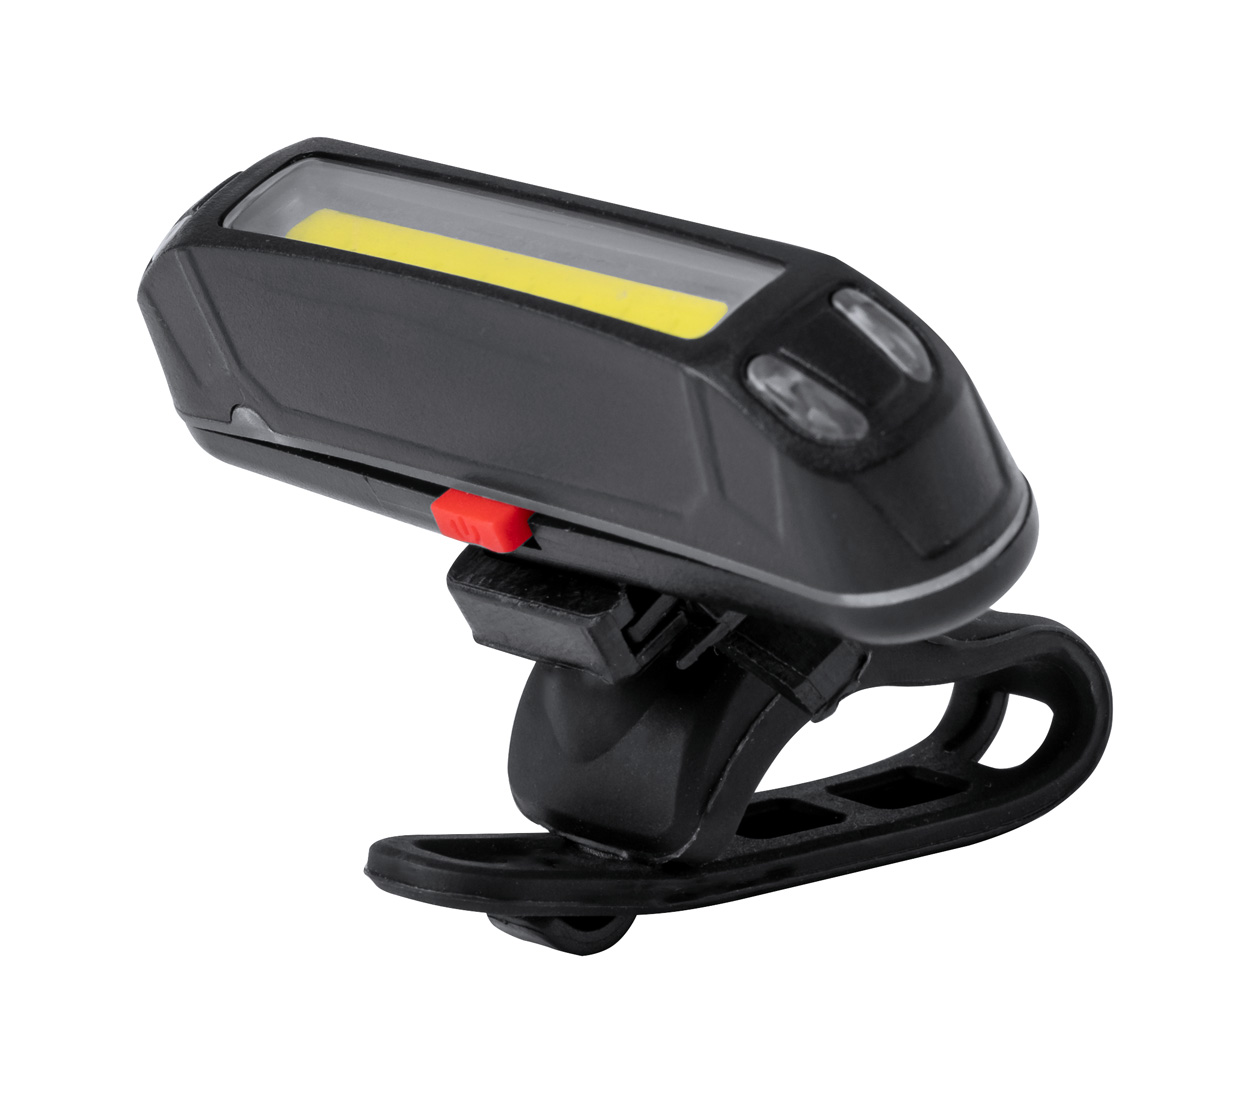 Havu set of rechargeable bike lights - black